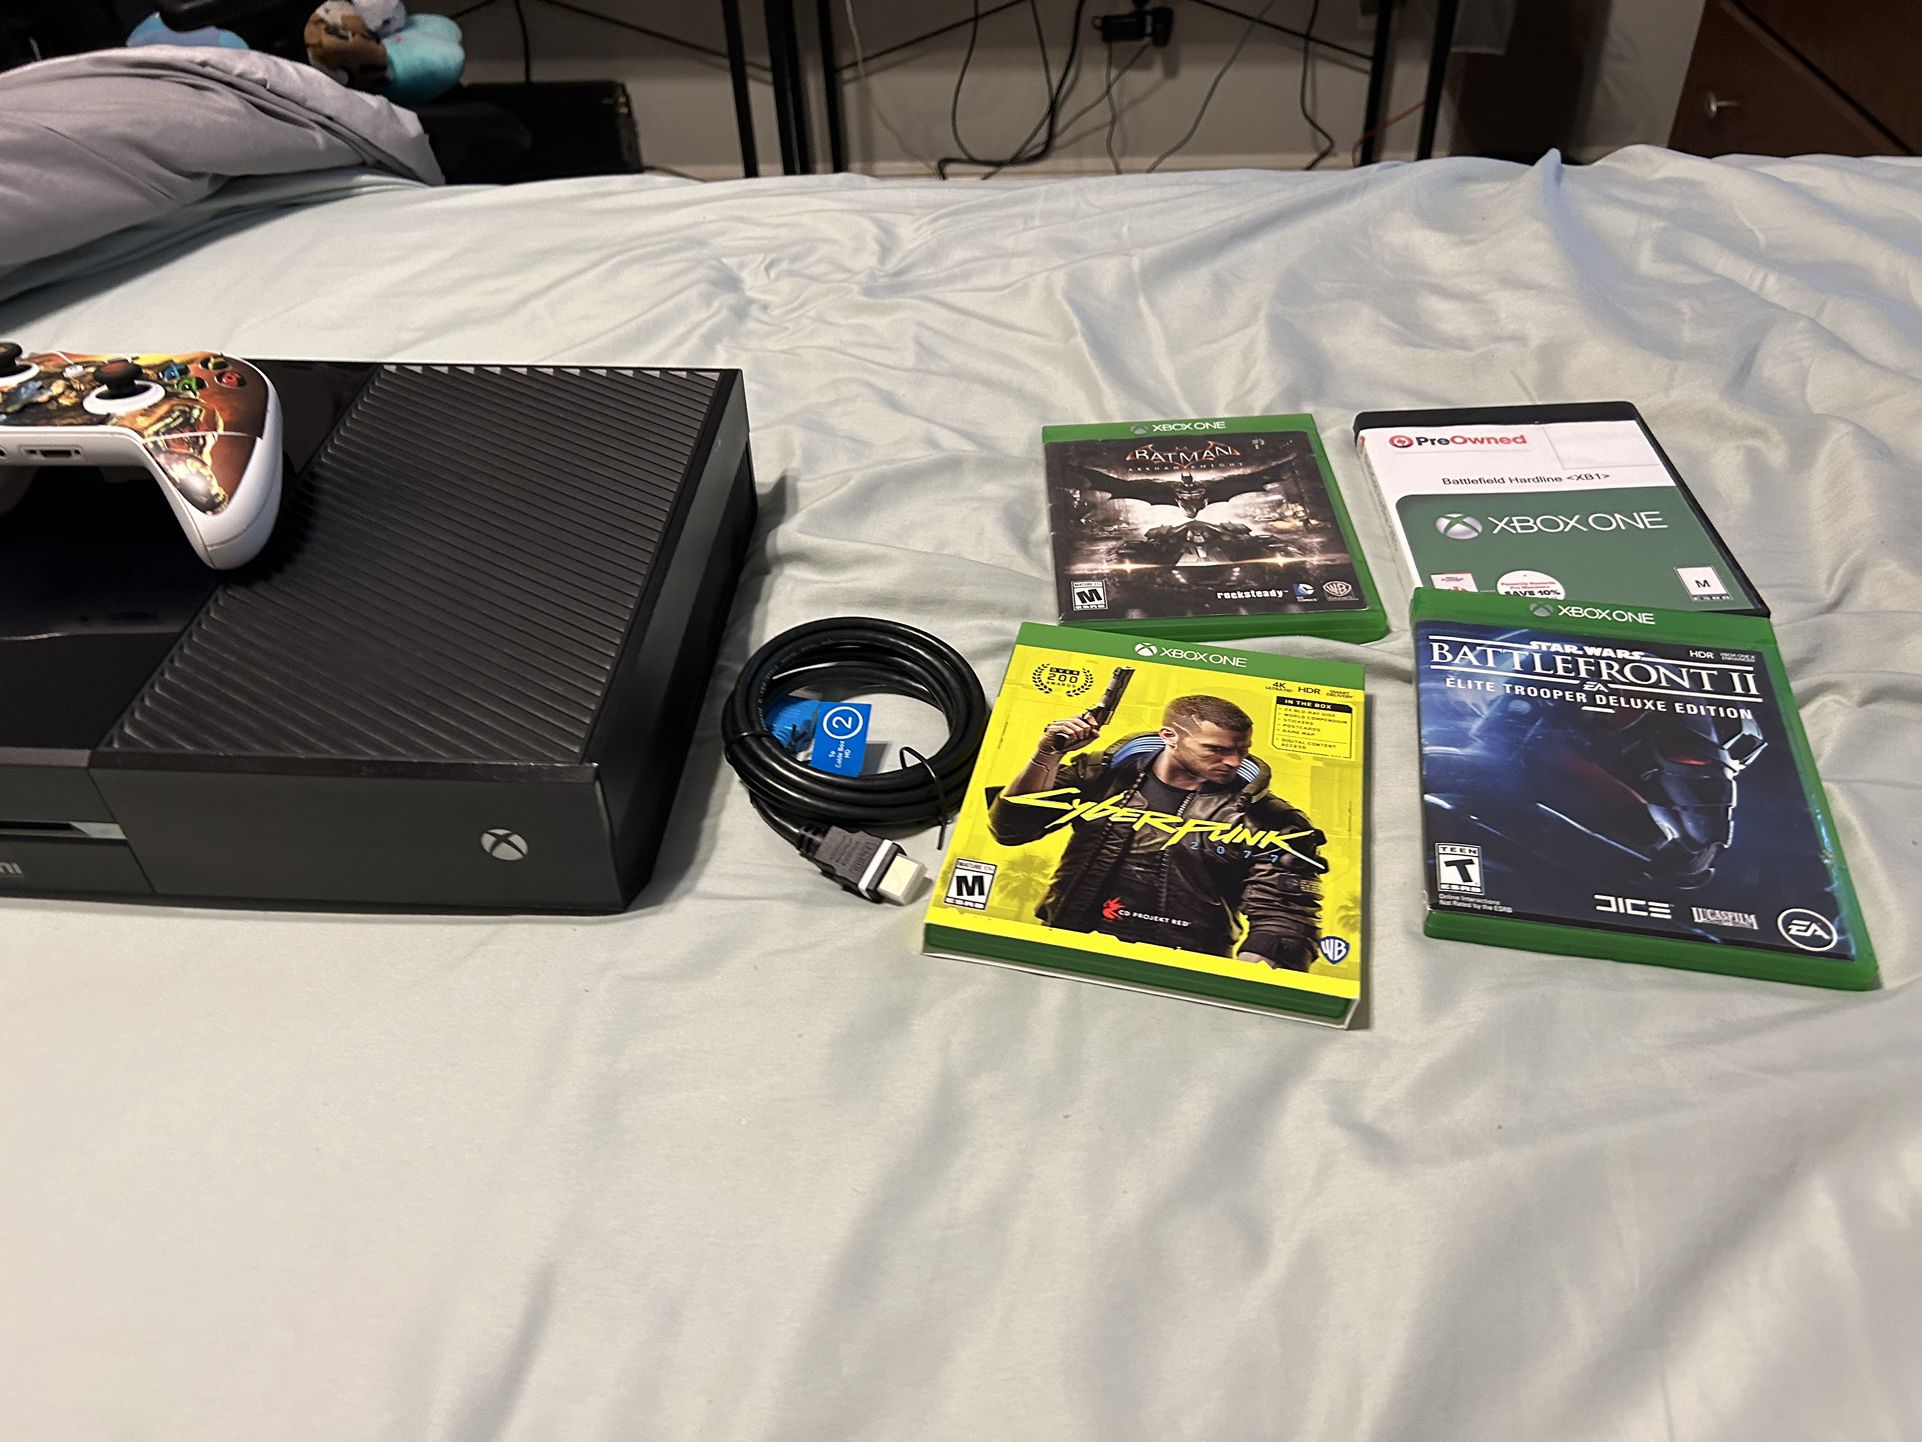 Xbox One (black)